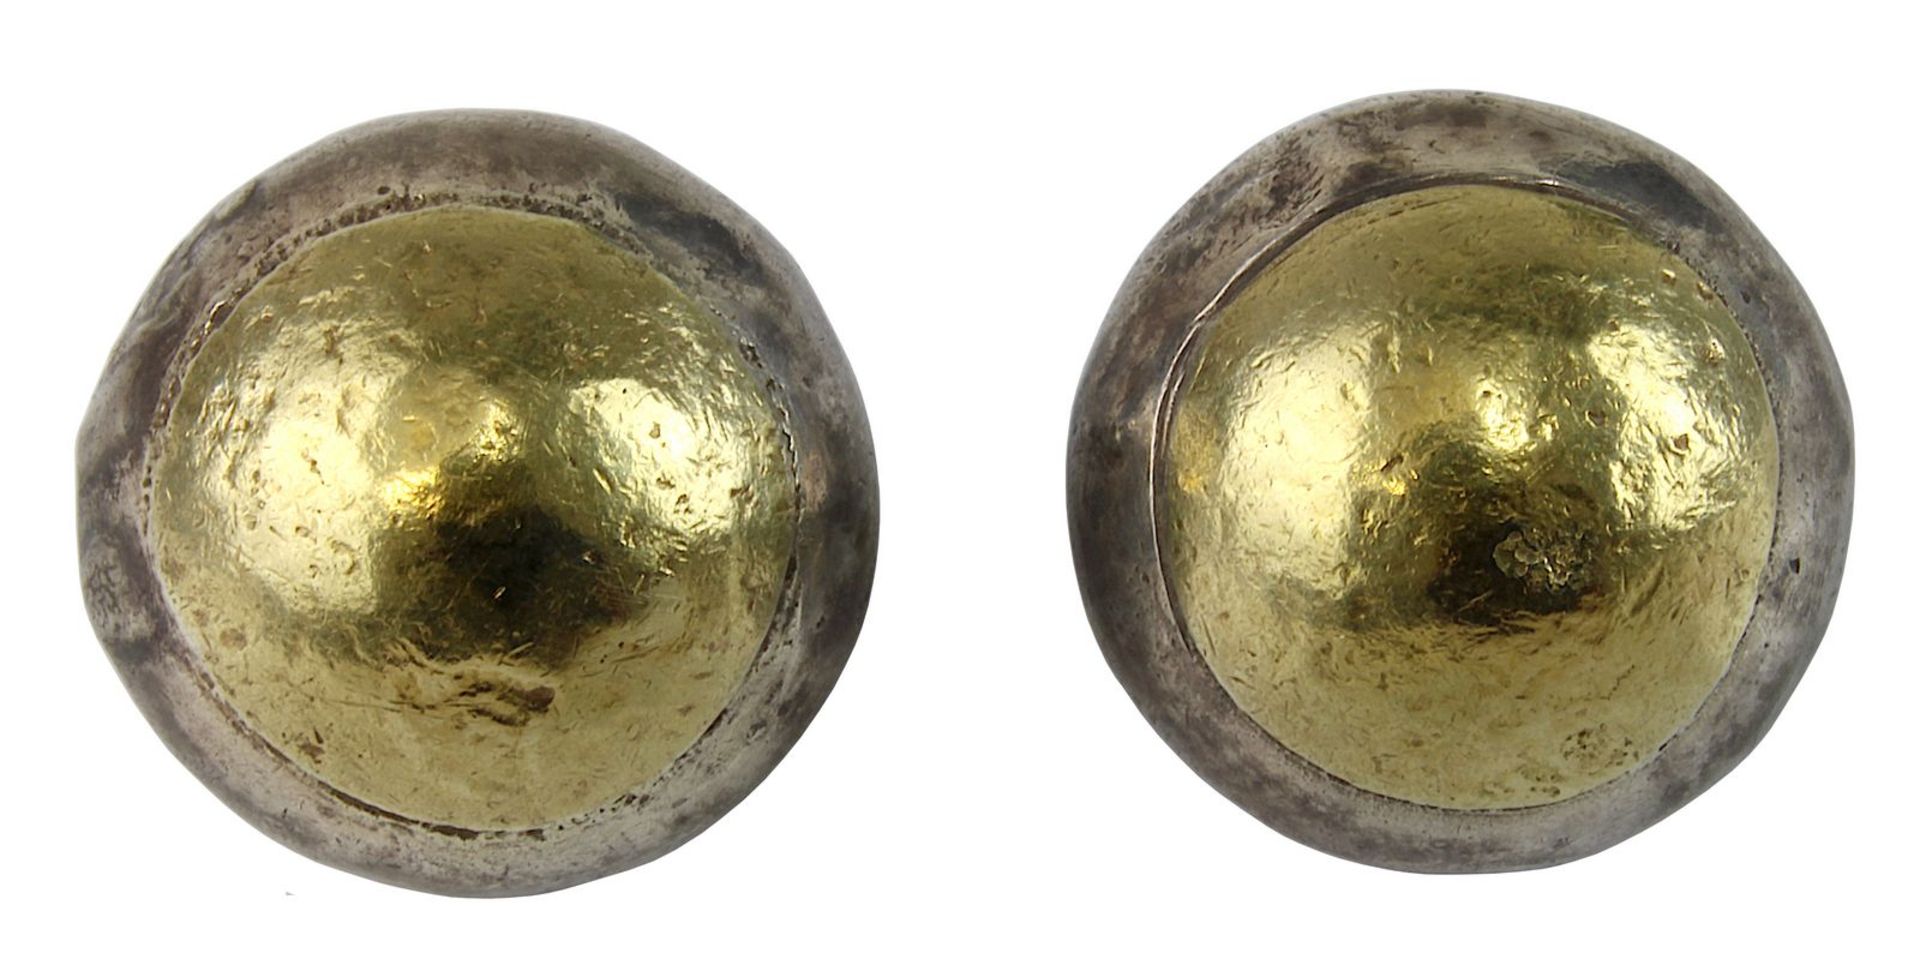 Paar Ohrstecker aus Silber und Gold mit Clip-Verschluss, Goldschmiedearbeit, runde Ohrstecker aus